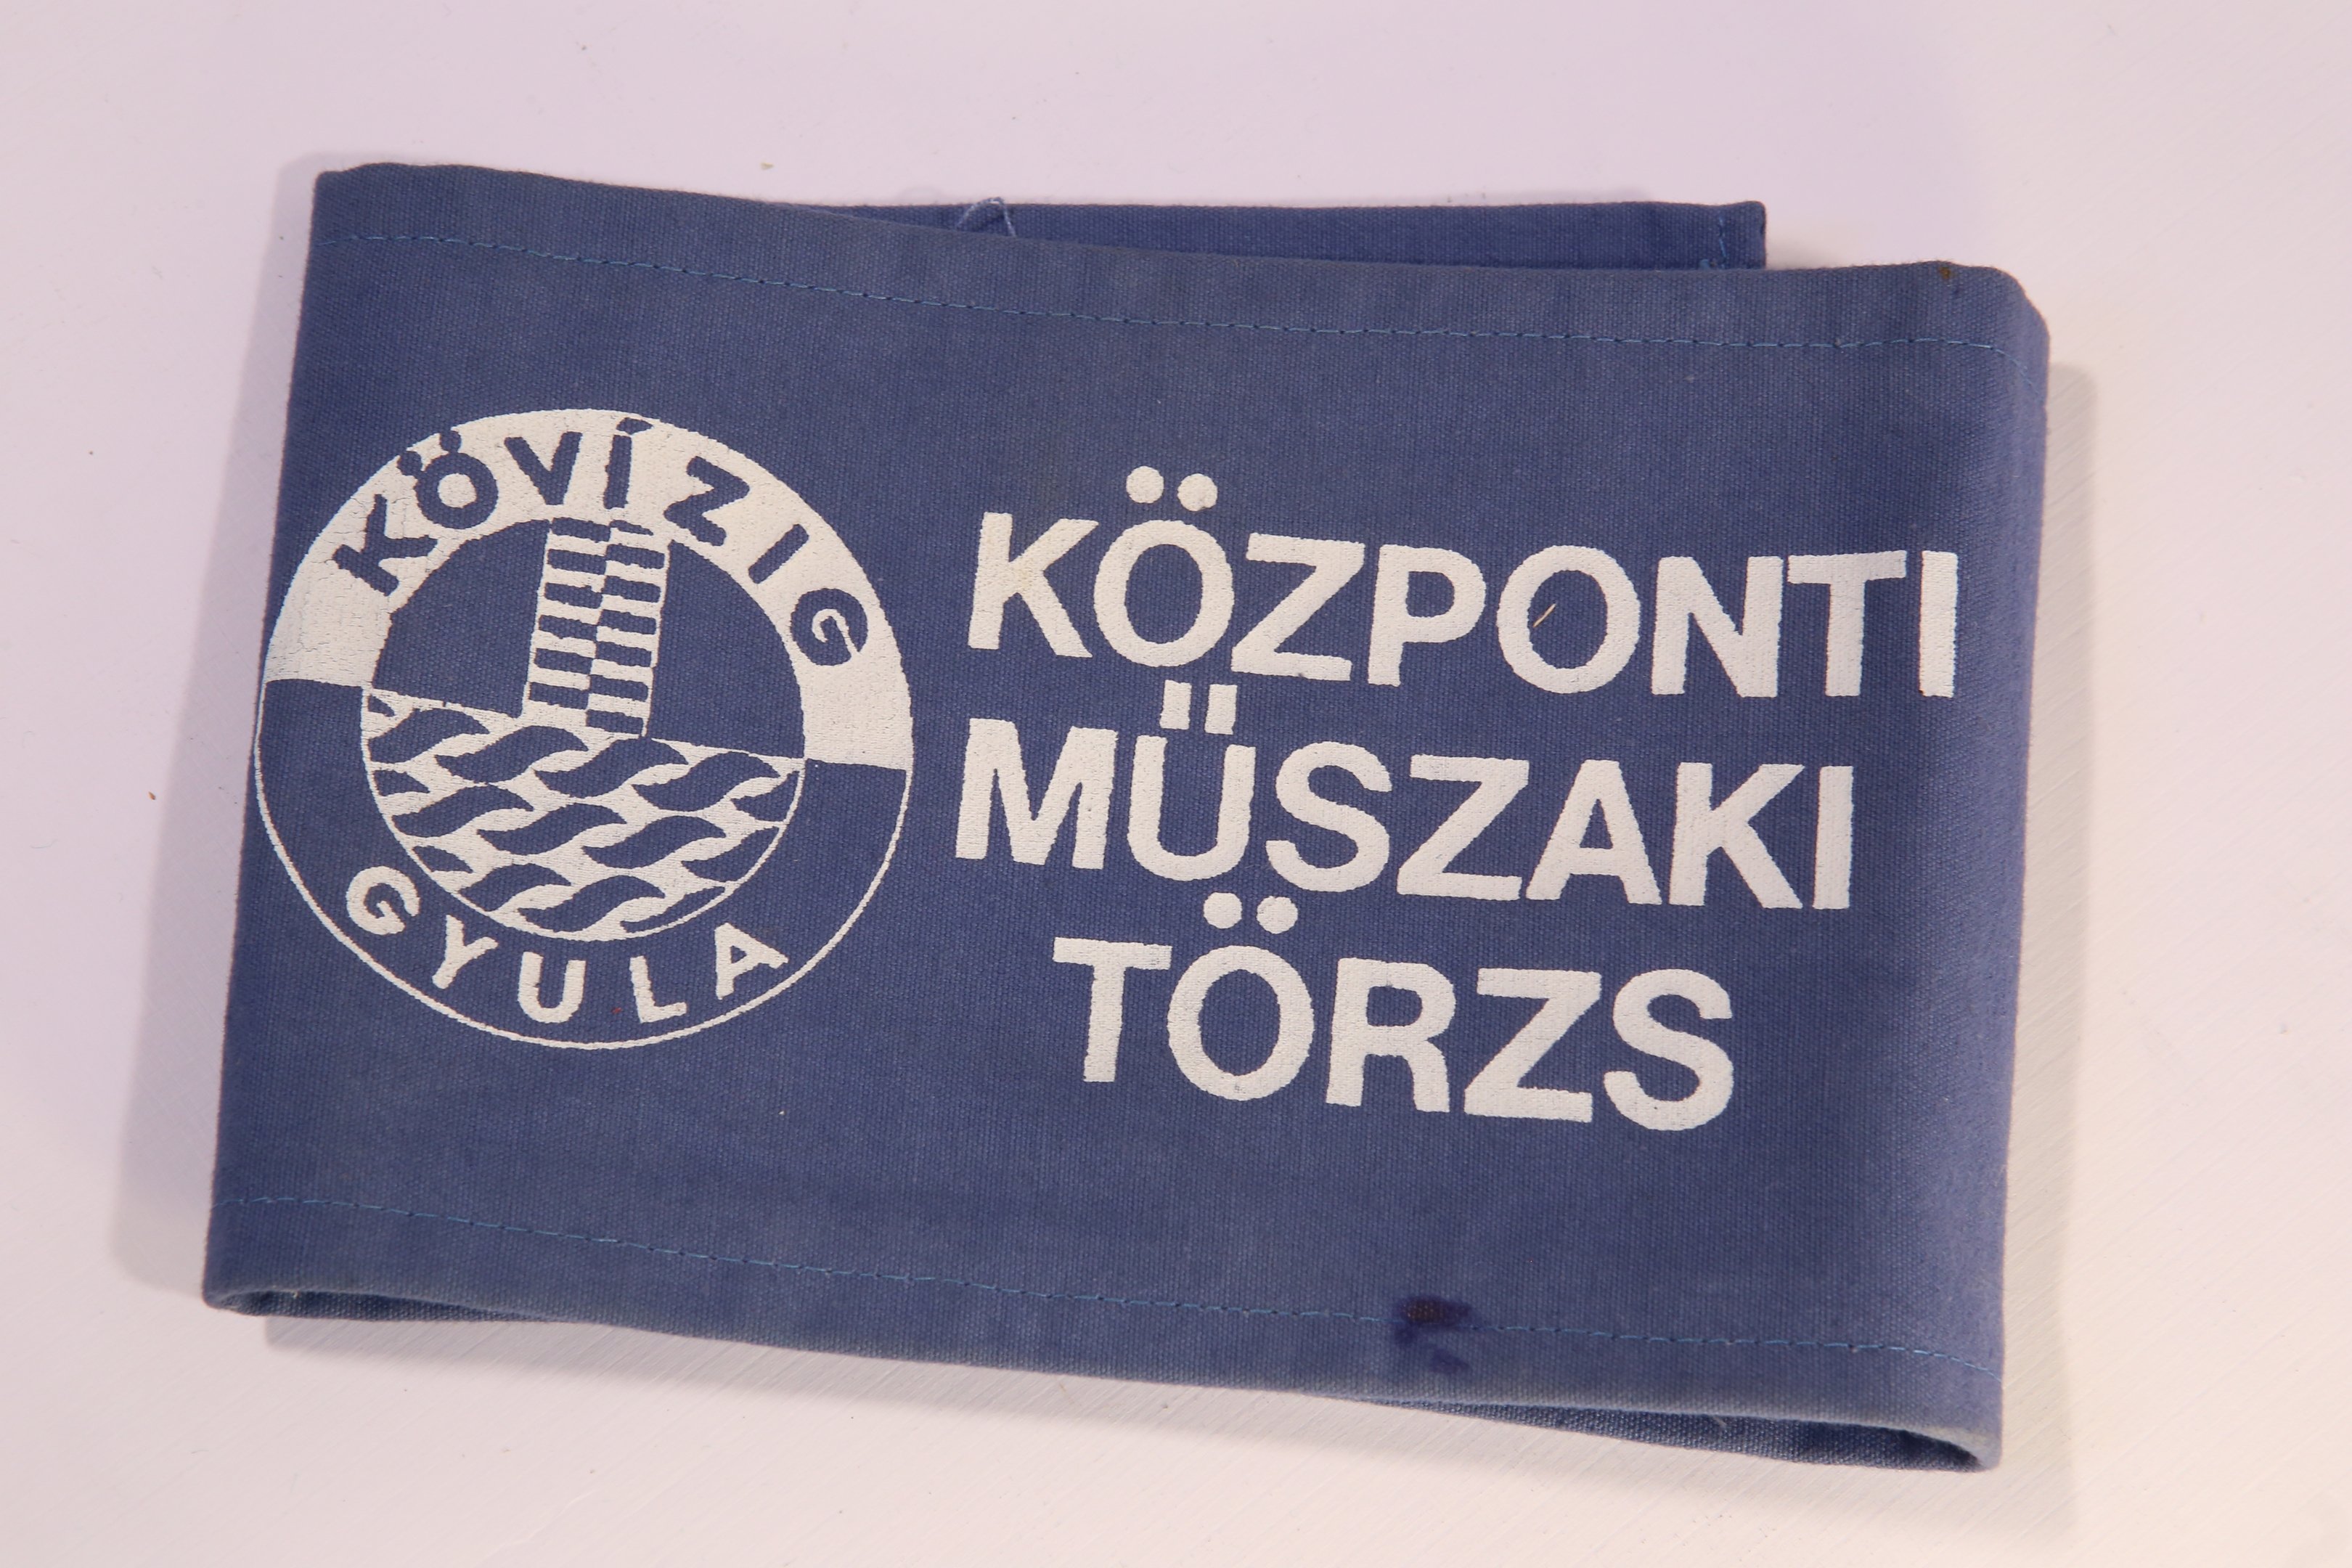 Textil karszalag - Központi Műszaki Törzs (Magyar Környezetvédelmi és Vízügyi Múzeum - Duna Múzeum CC BY-NC-SA)